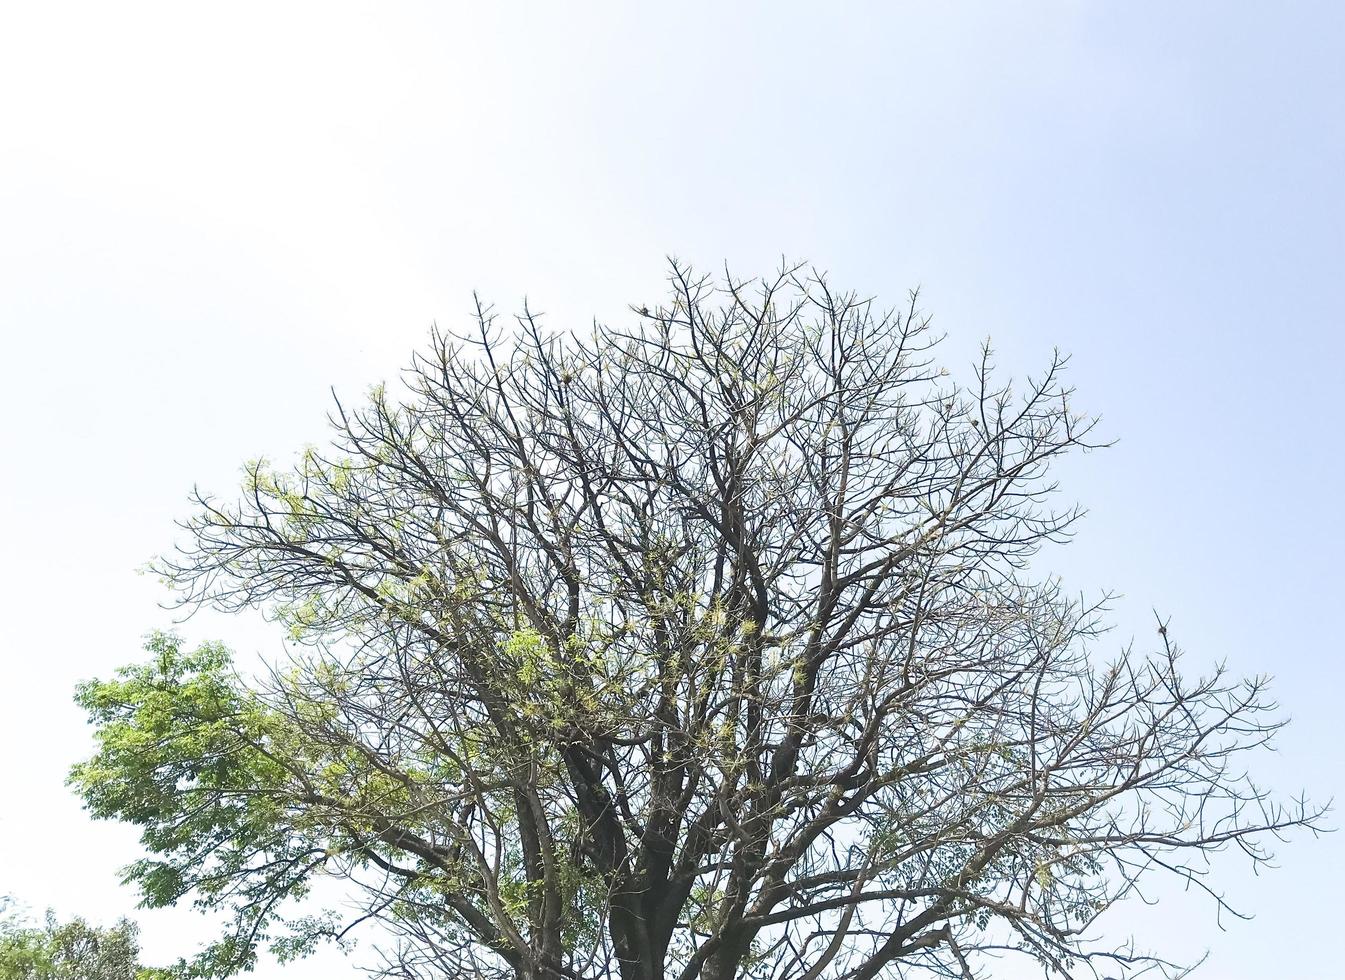 árbol seco con pocas hojas aislado con cielo azul foto